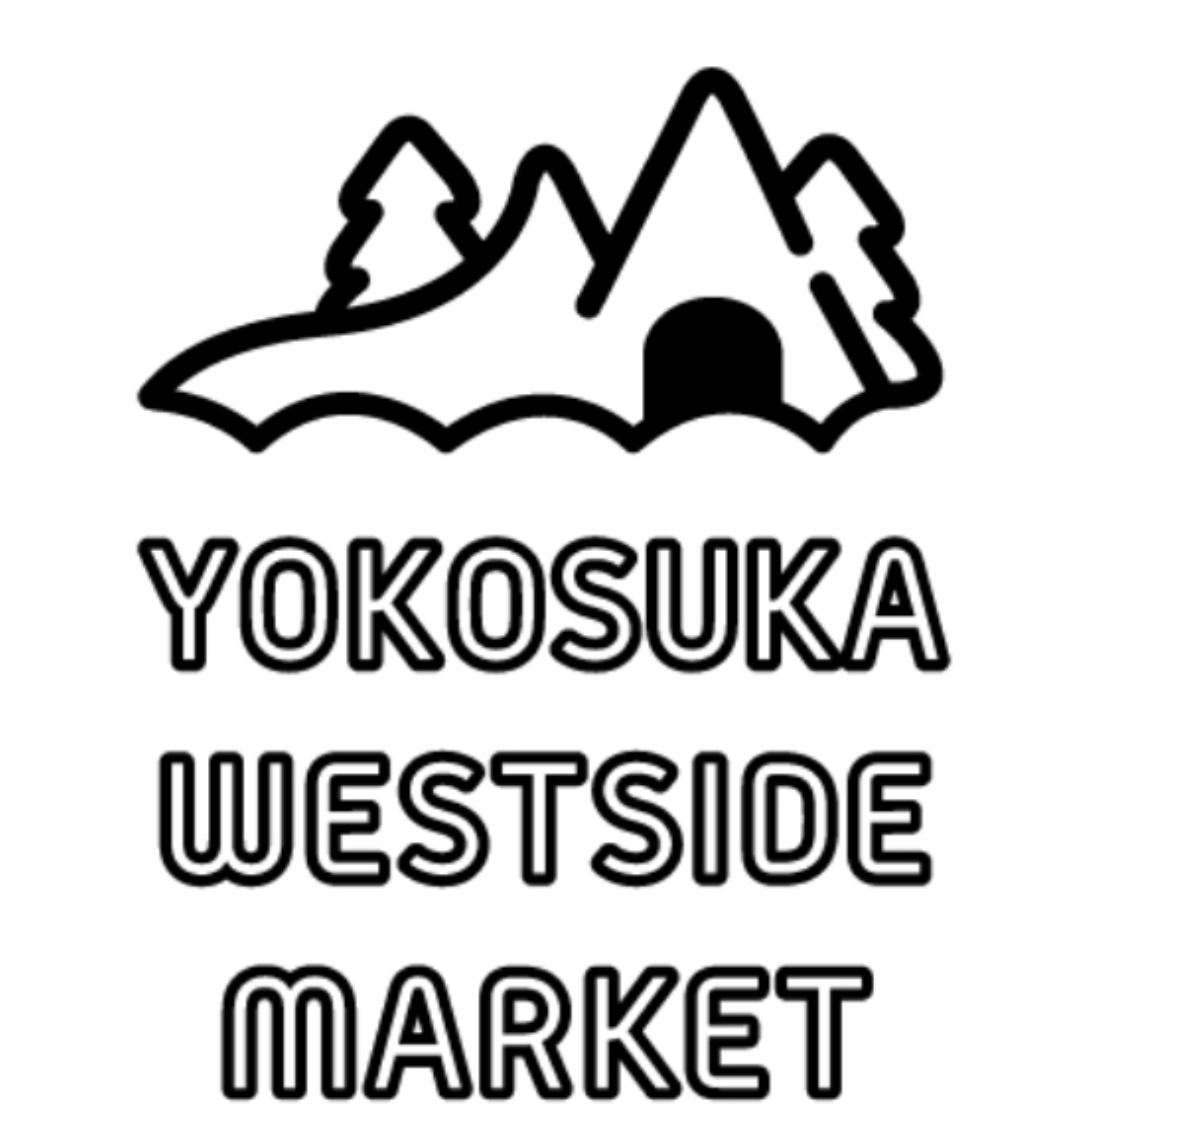 YOKOSUKA WESTSIDE MARKET 2020